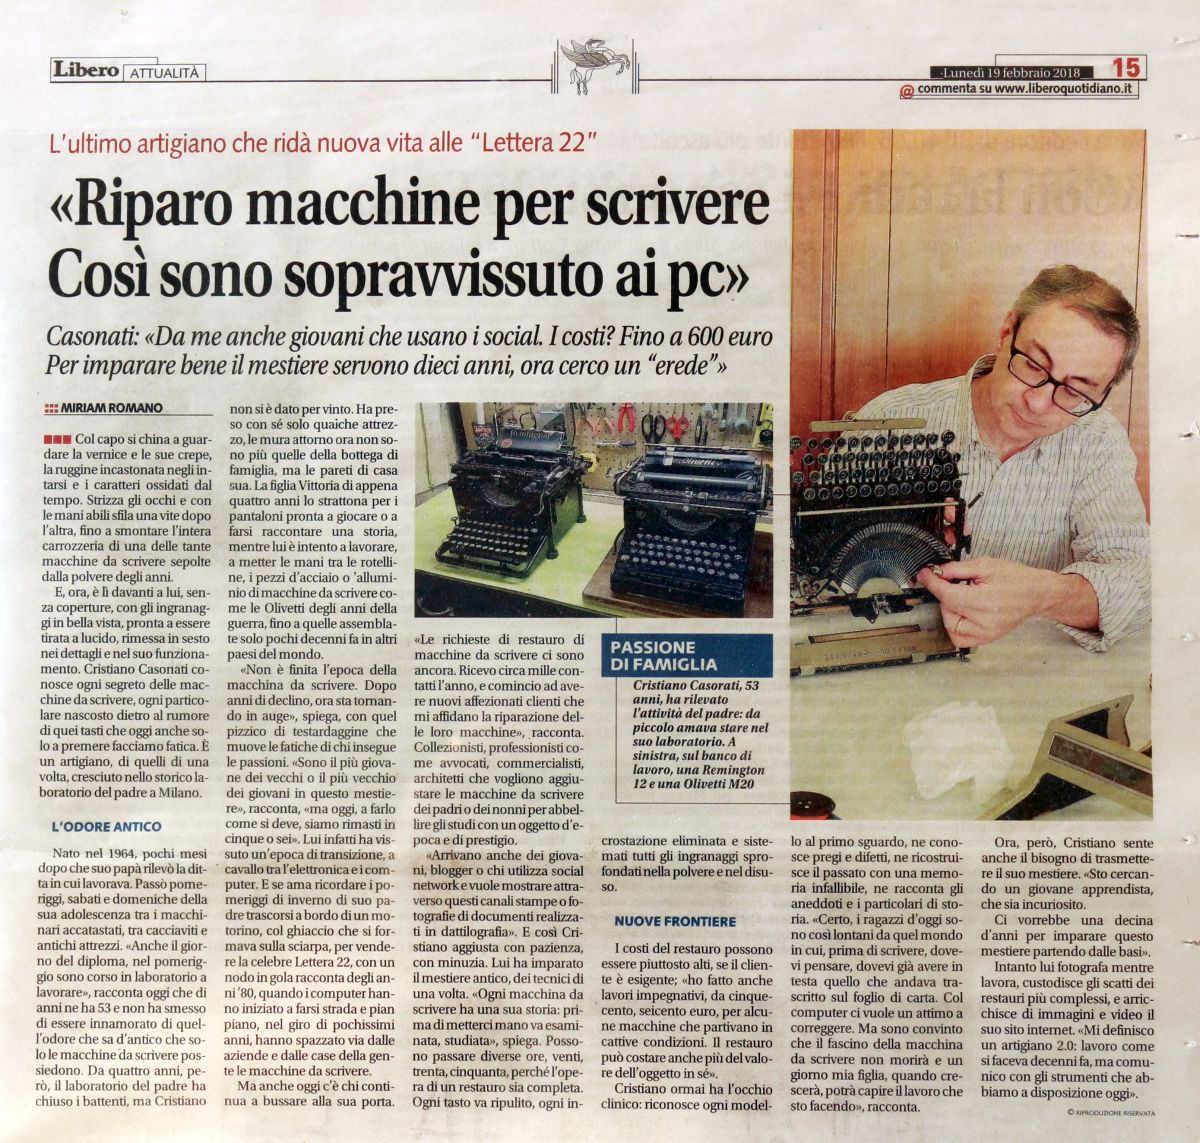 Libero quotidiano 190218 CMC Artigiano restauro macchine per scrivere Olivetti 3397458418 - www.marinoripara.com